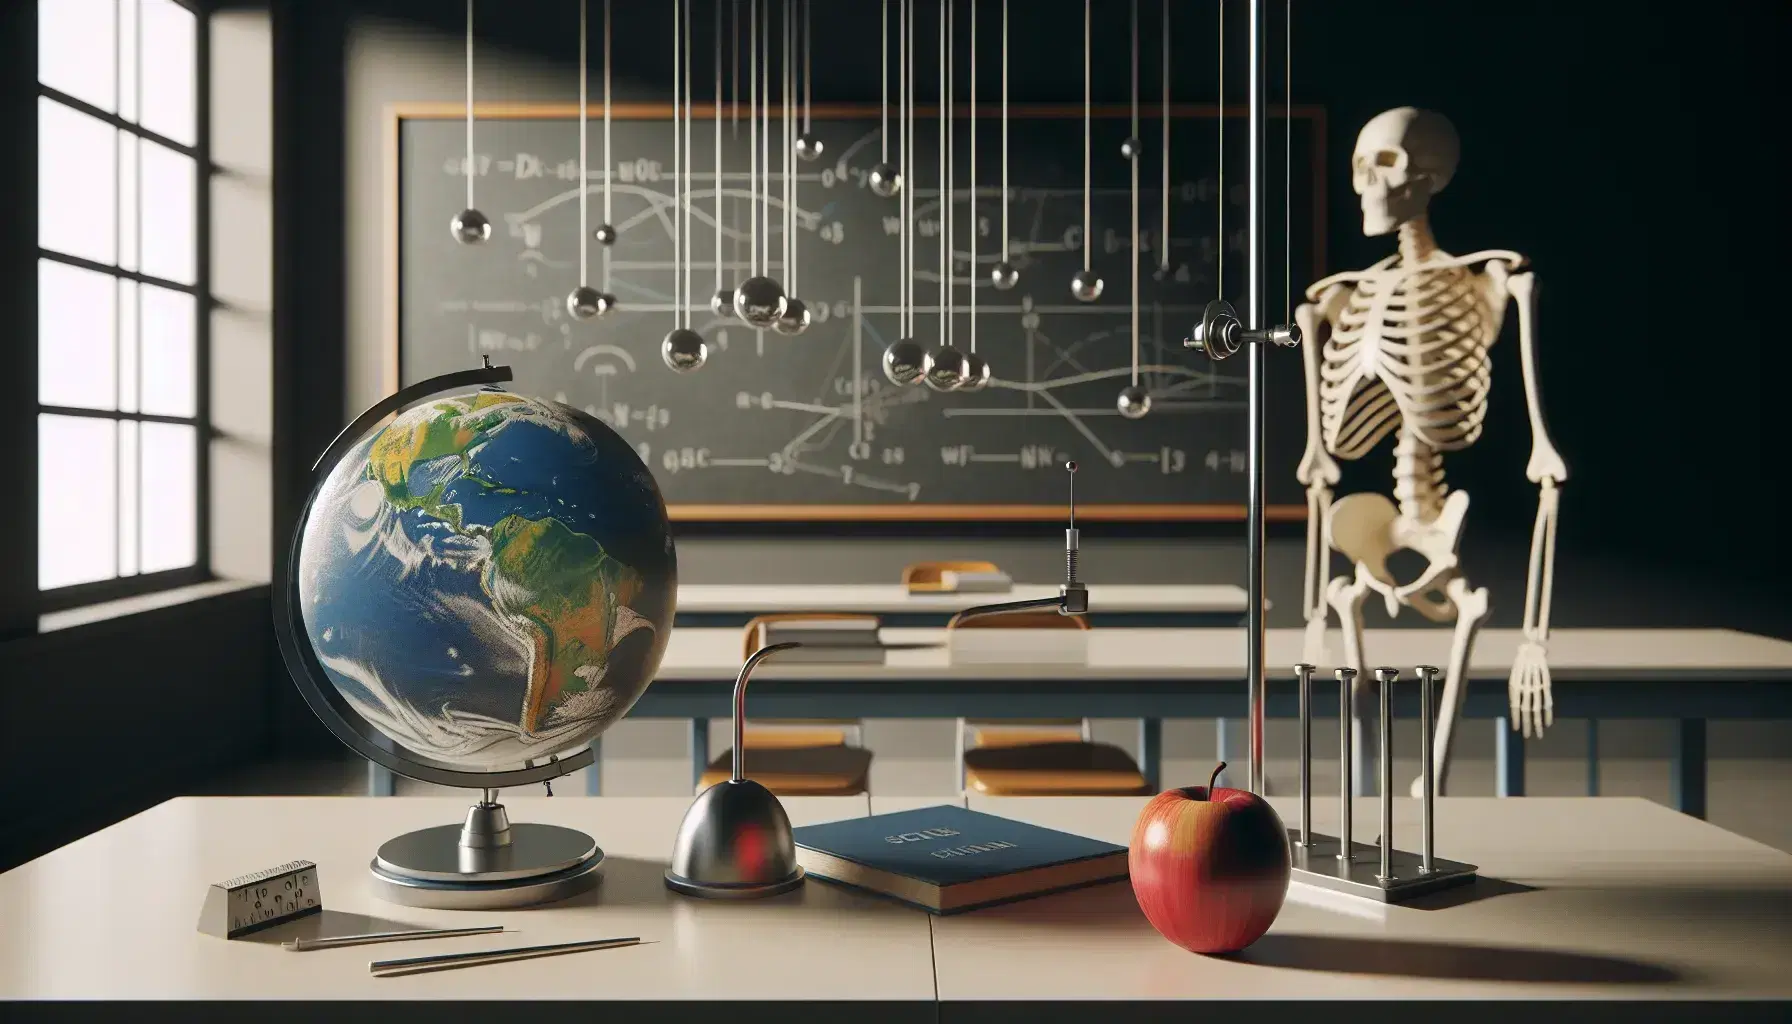 Aula de física con globo terráqueo, manzana roja en mesa, esqueleto humano y péndulos metálicos, frente a pizarra negra y ventana con cielo azul.